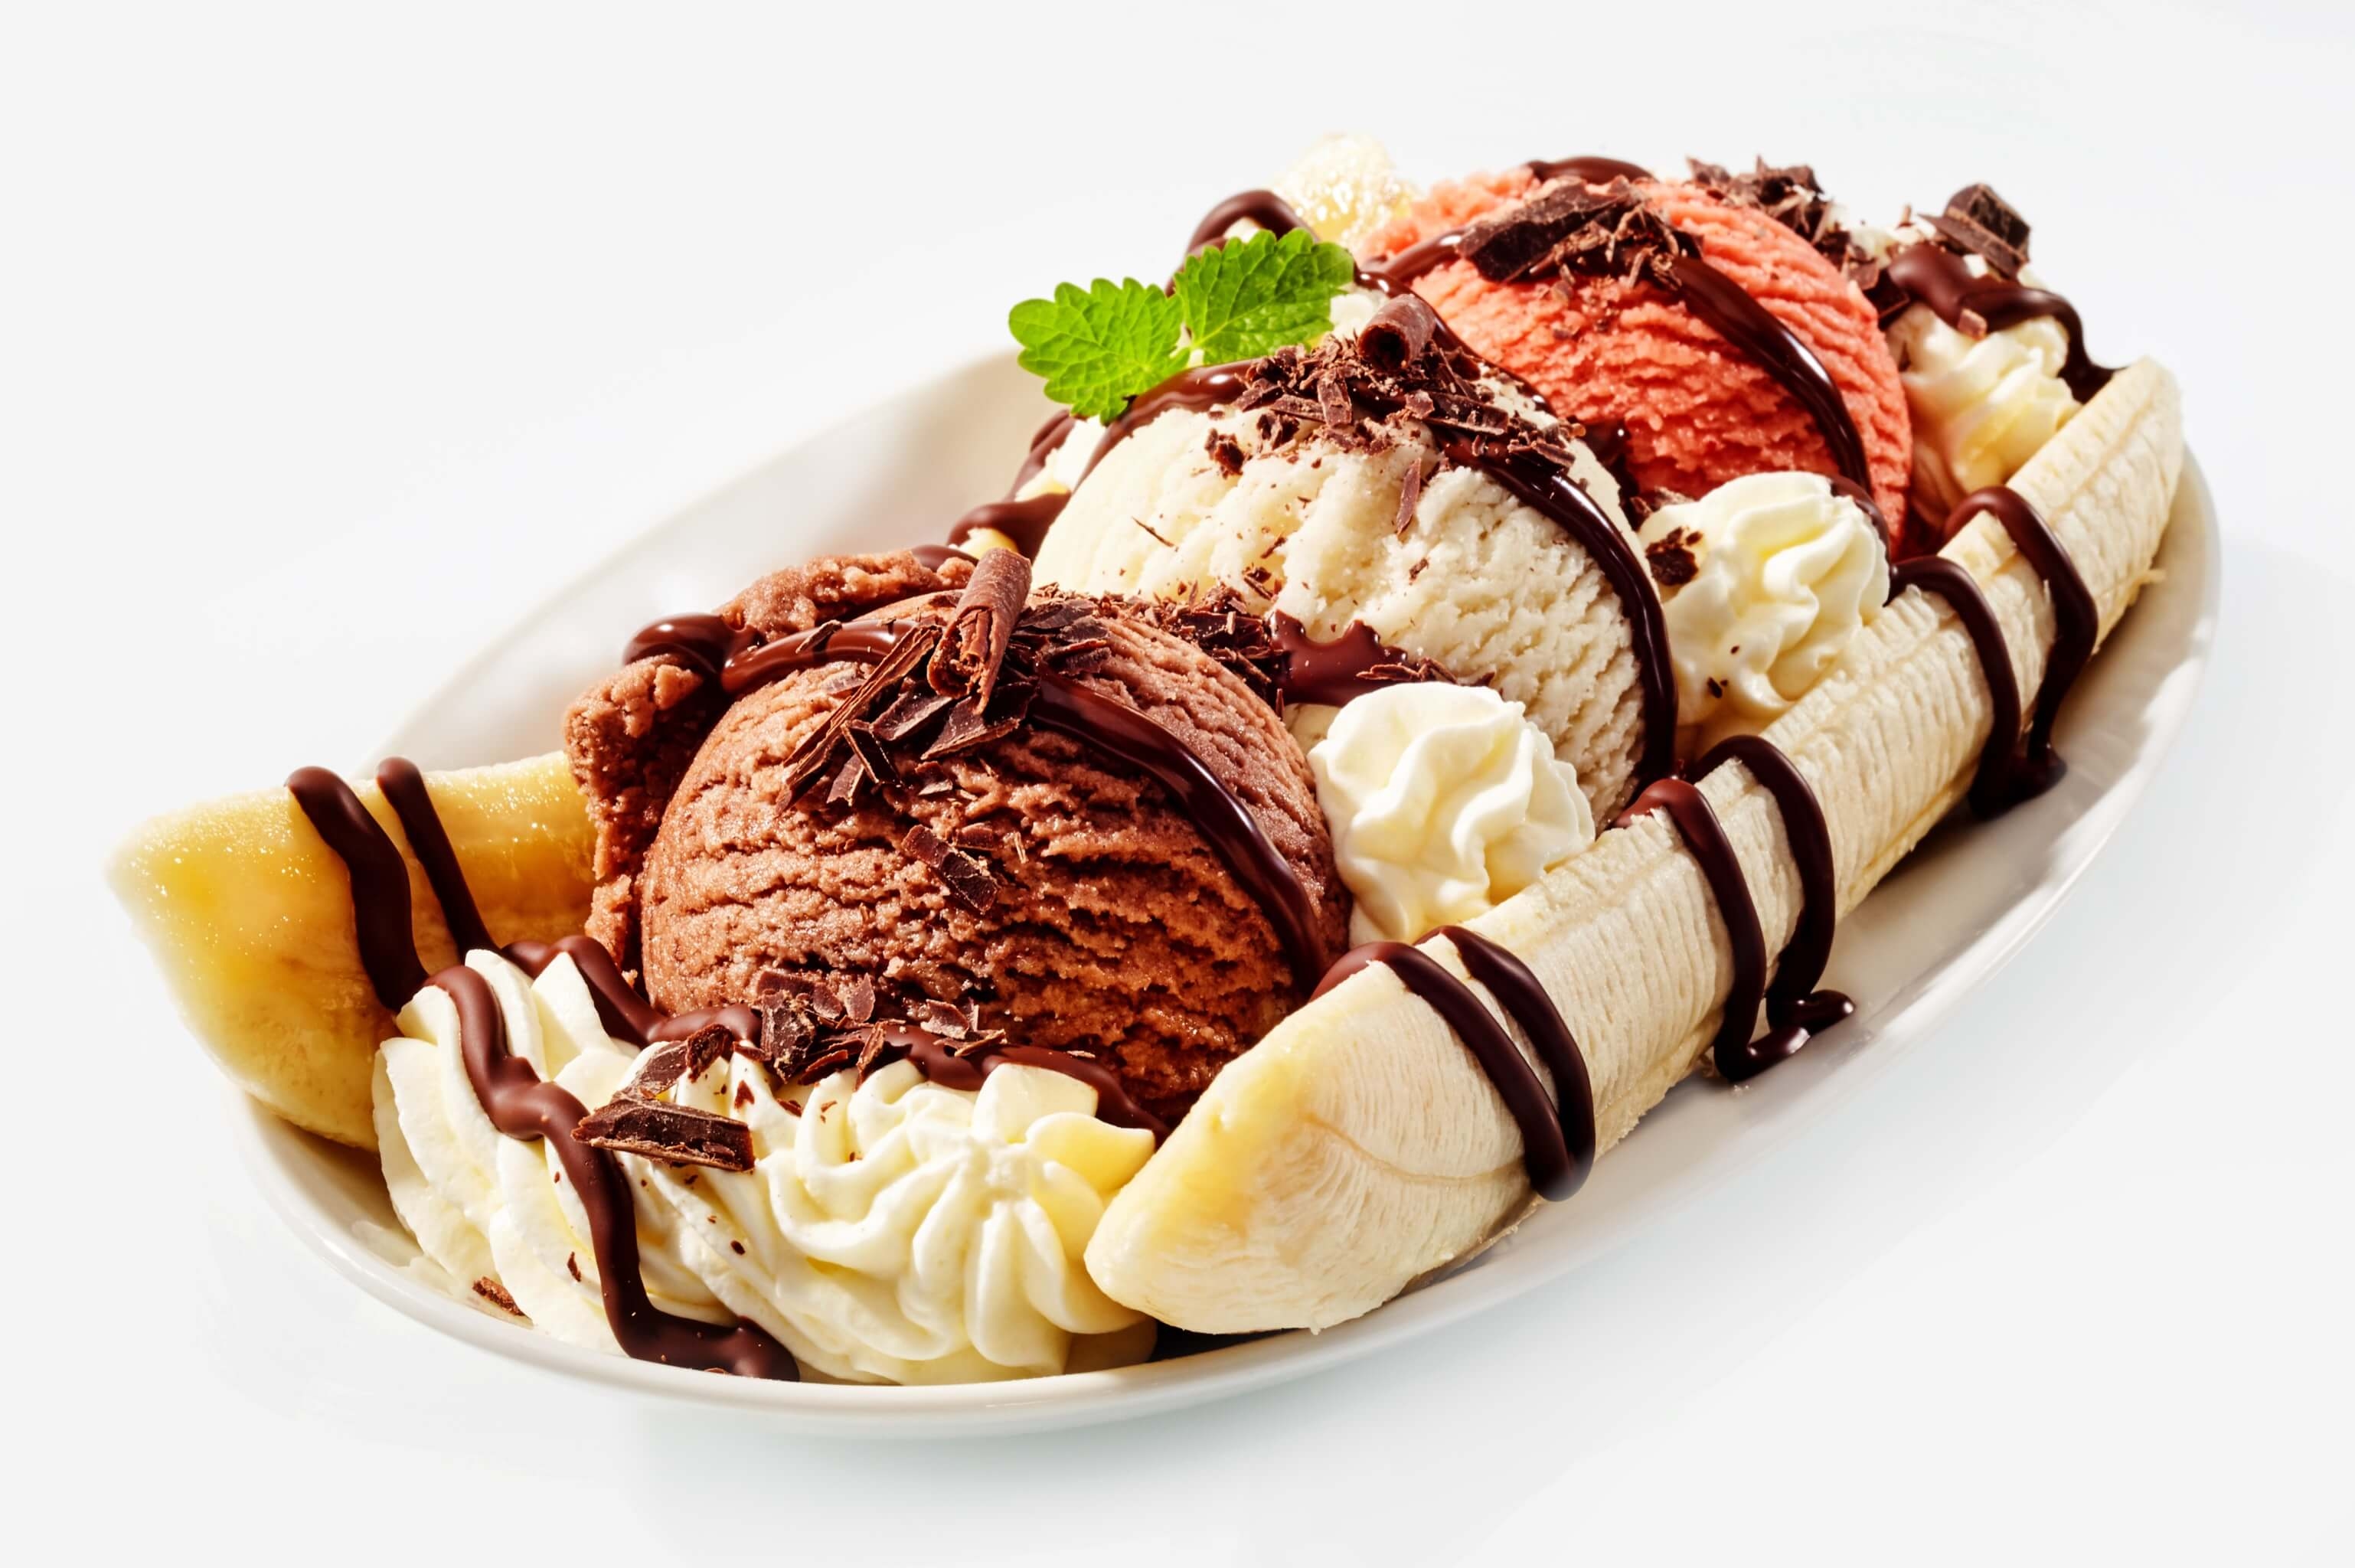 ice-cream-frozen-treats.jpg